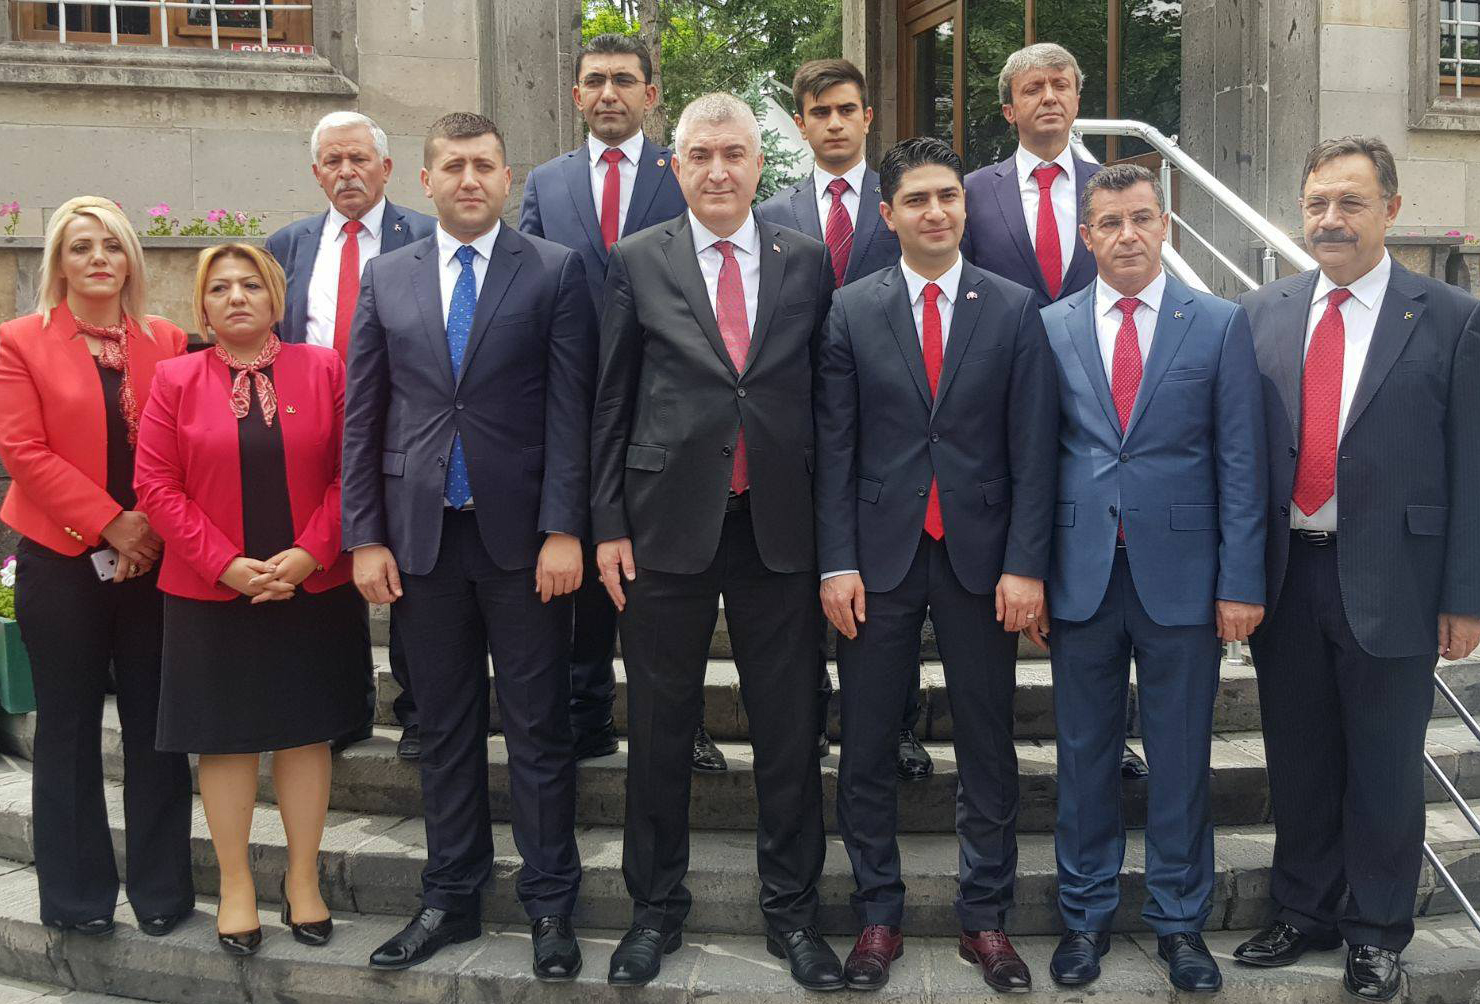  Mhp Kayseri Milletvekili Adaylar almaya Devam Ediyor